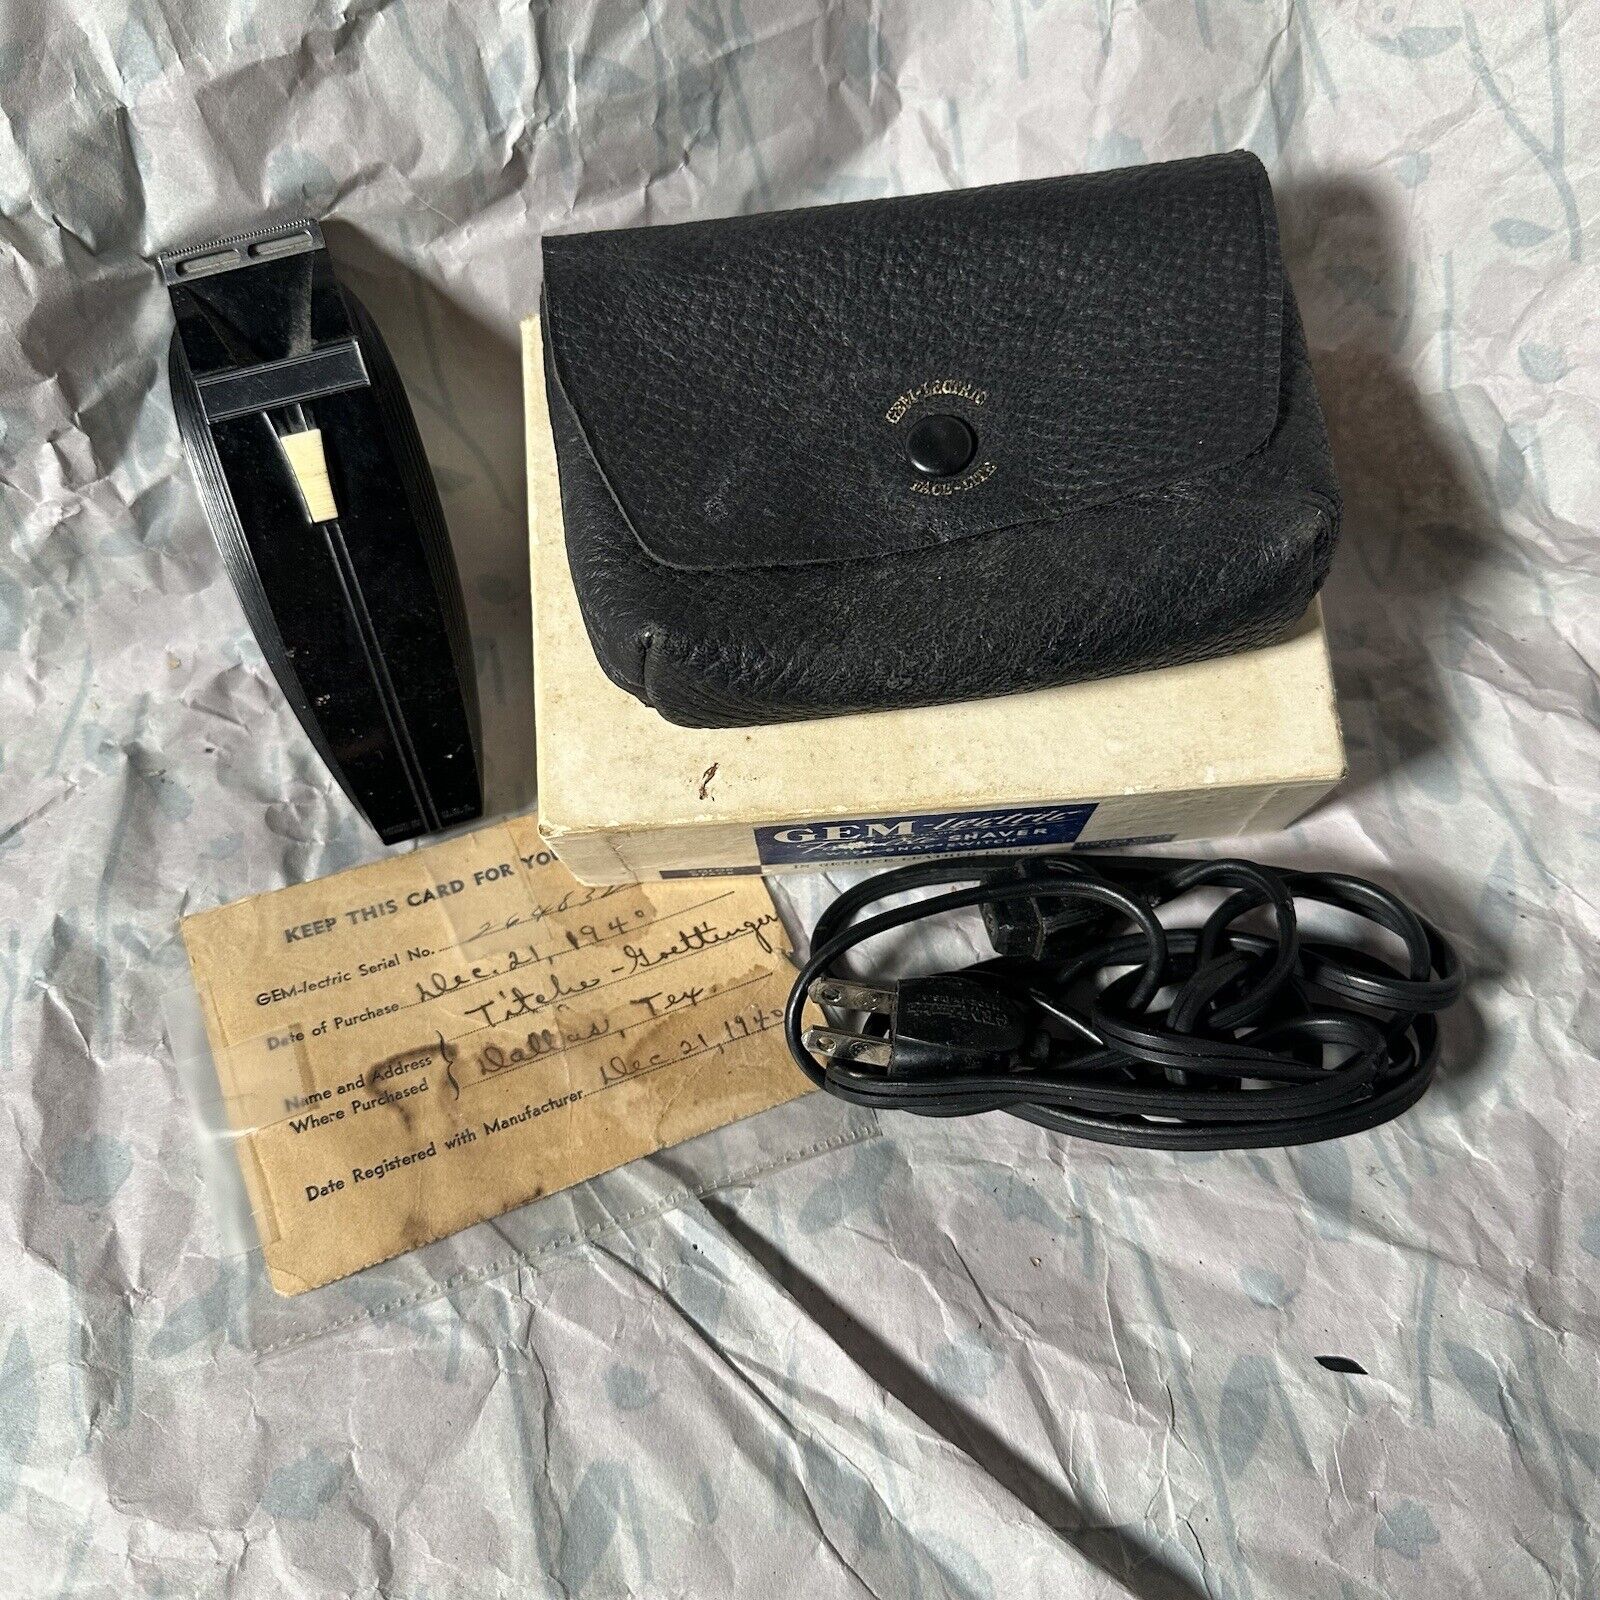 Vintage Gem-lectric Shaver  Originally Sold Dec 1940 Leather Case, Working Black